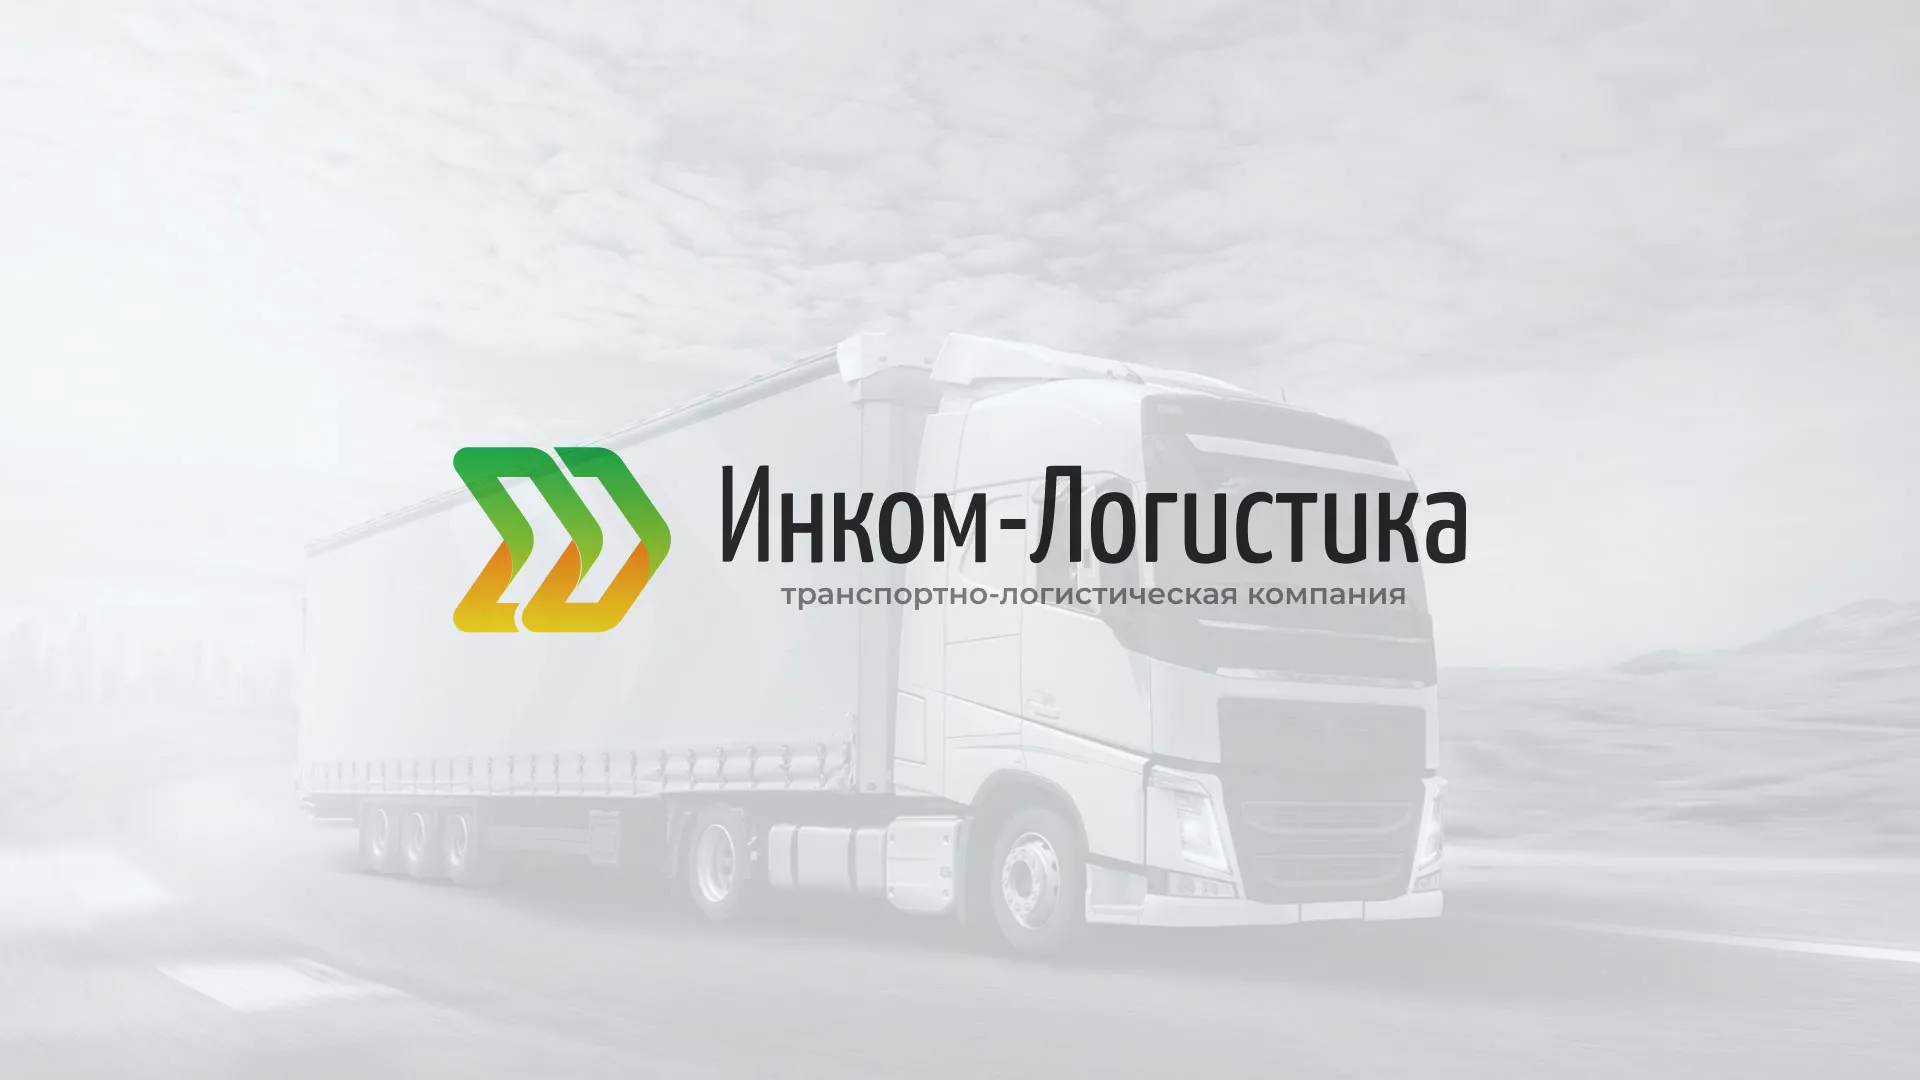 Разработка логотипа и сайта компании «Инком-Логистика» в Дмитриеве